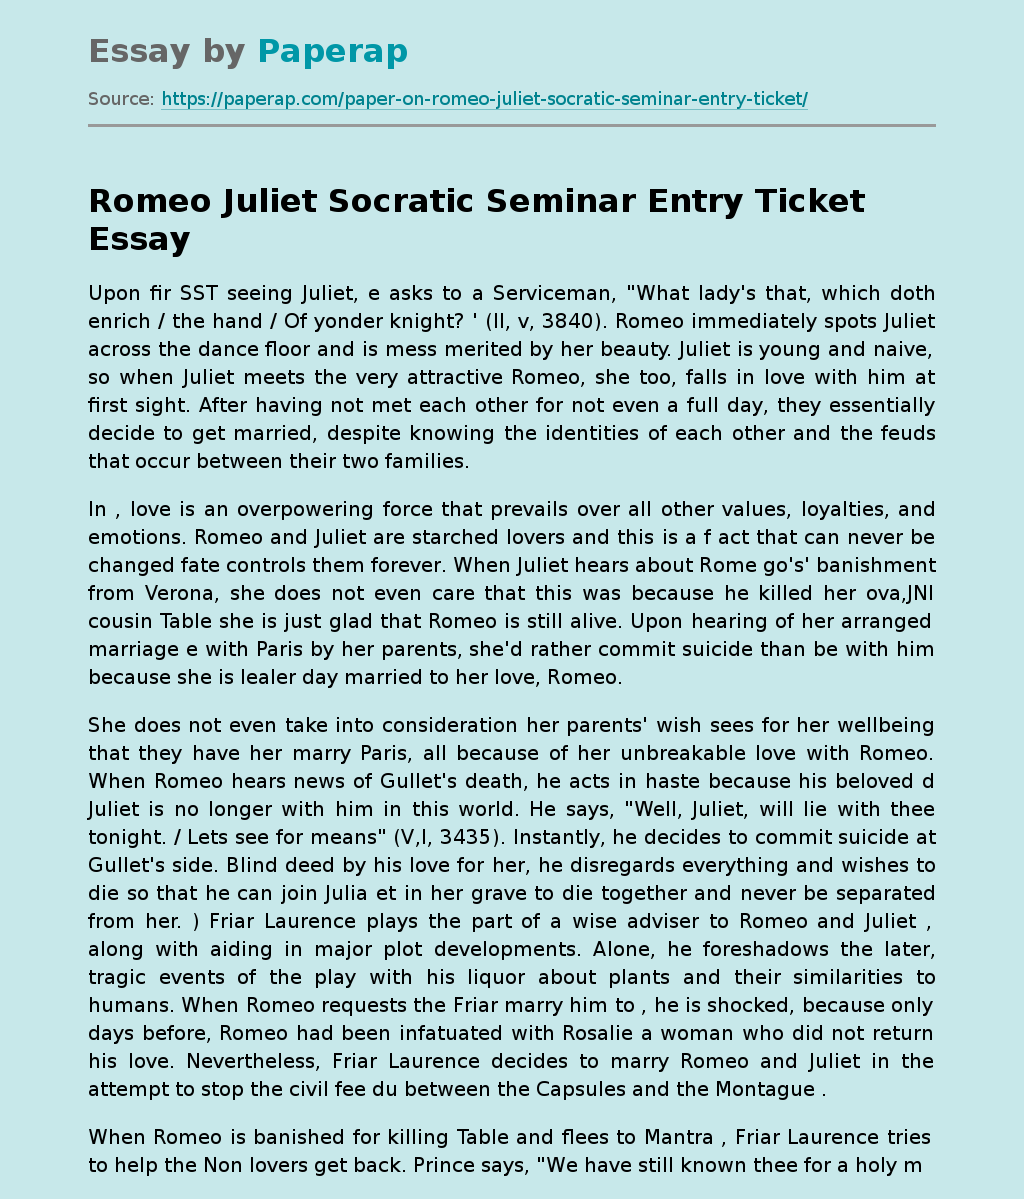 Romeo Juliet Socratic Seminar Entry Ticket